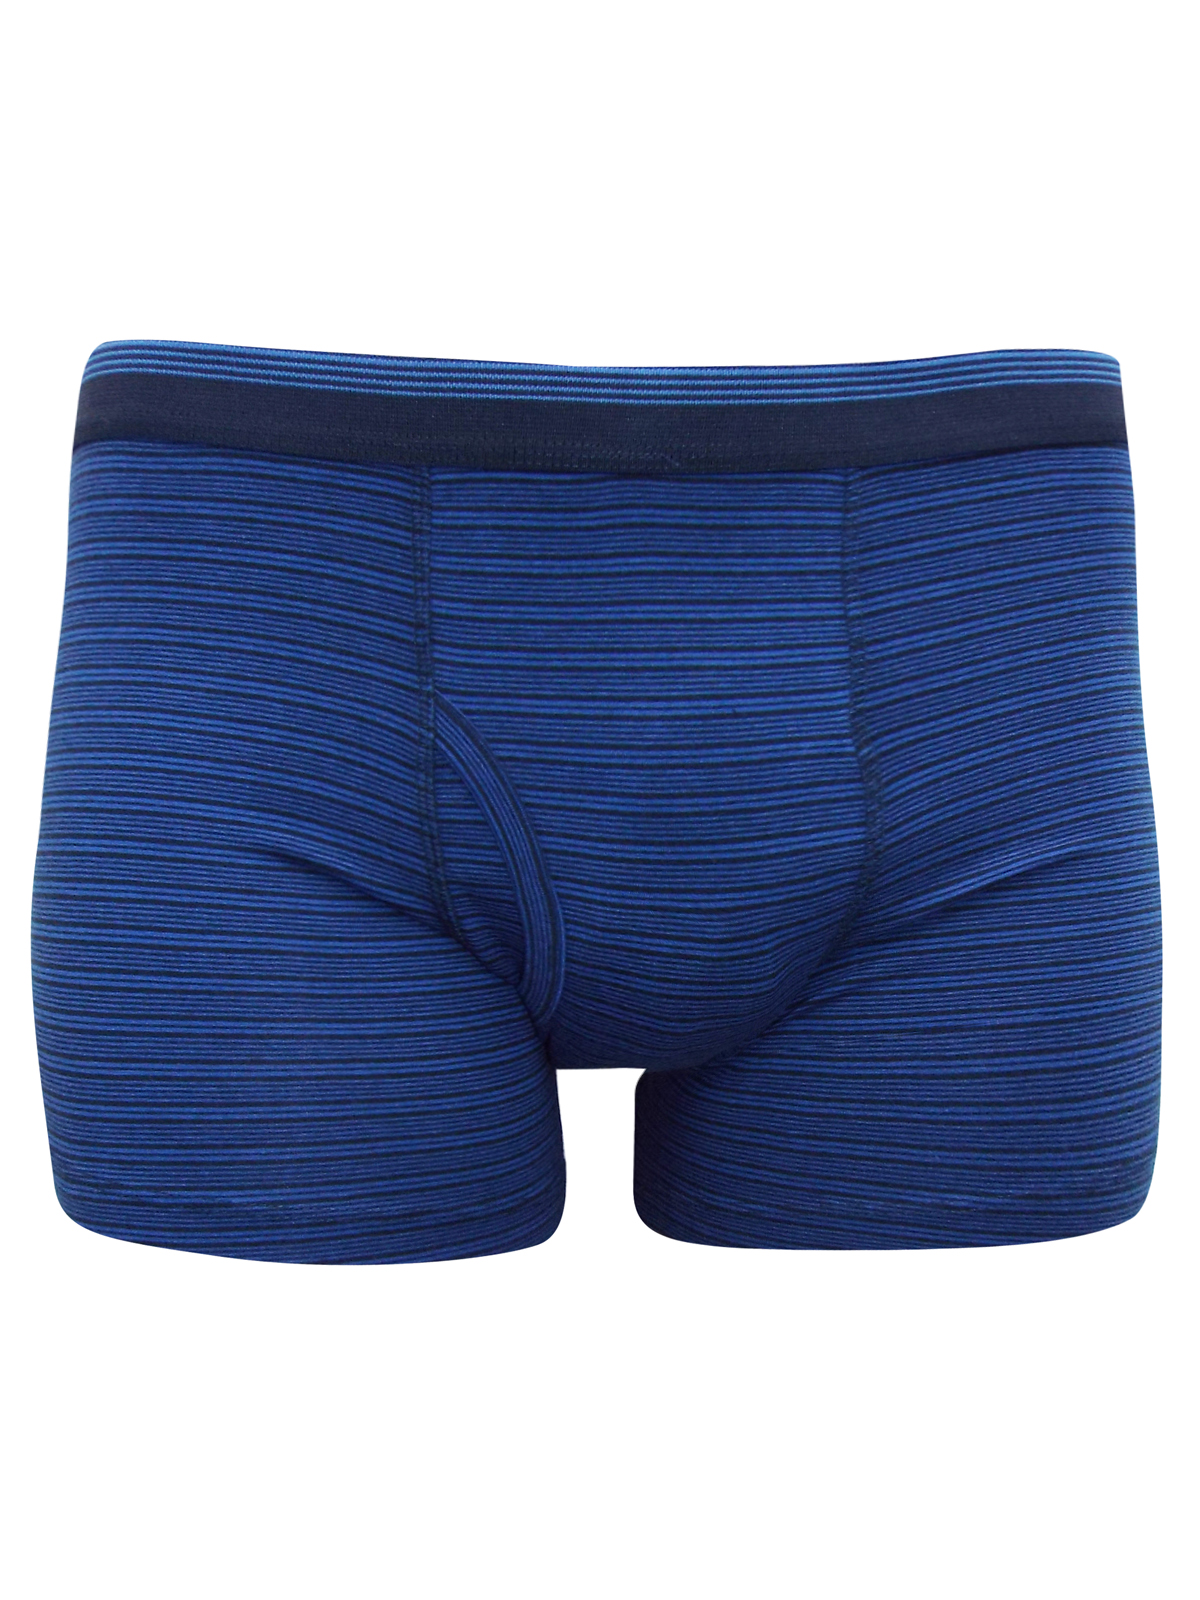 Debenhams - - D3benhams BLUE Cotton Rich Striped Boxers - Size Small to 4XL